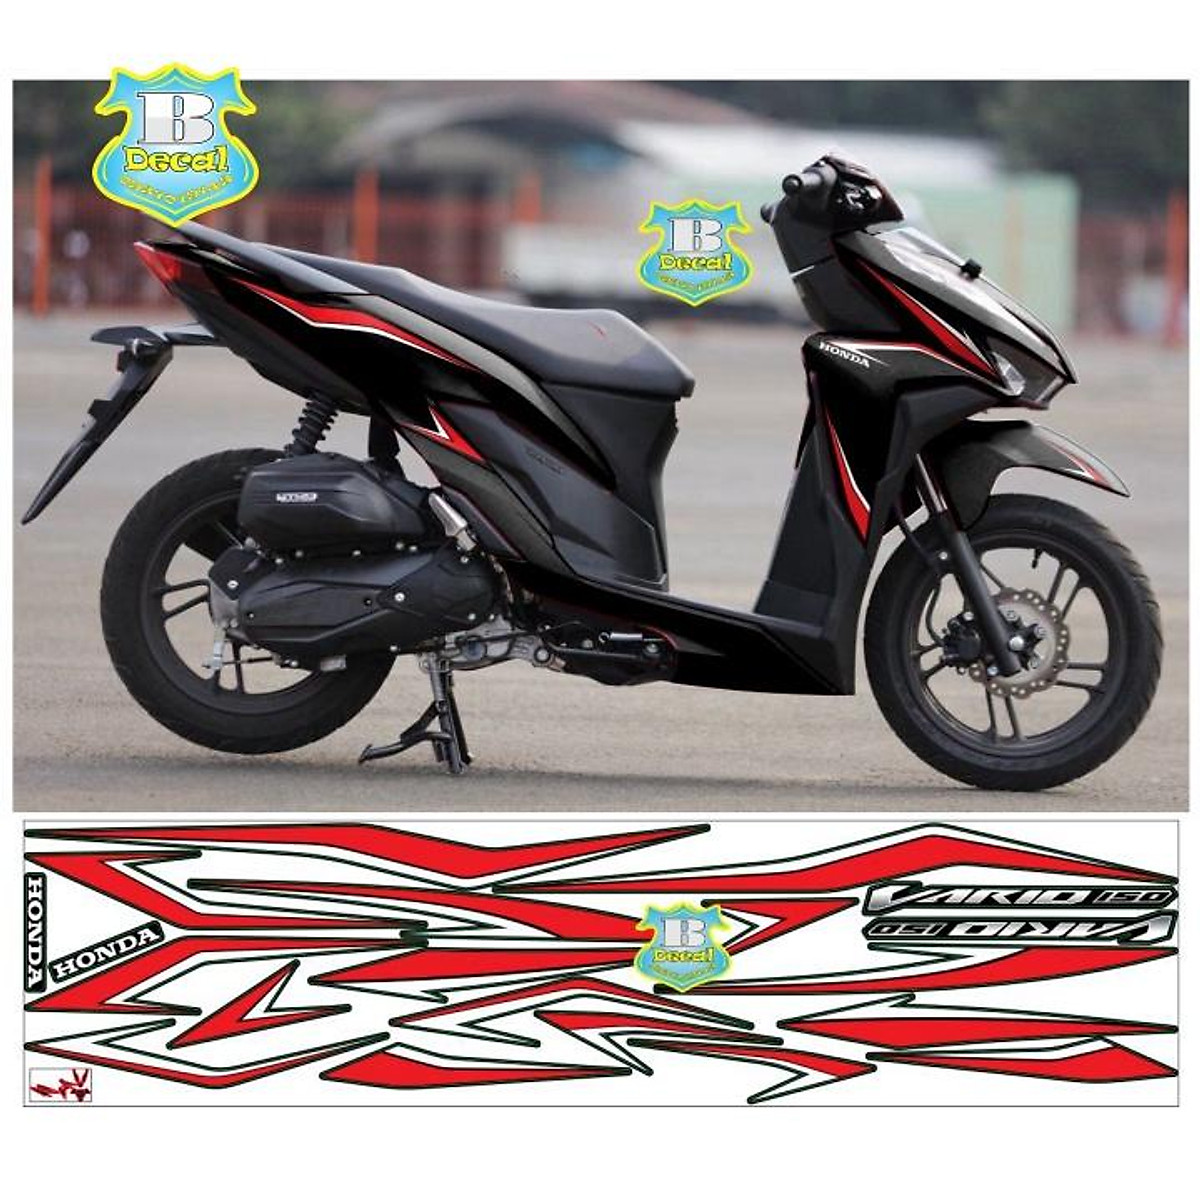 Motor Honda vario 125 Cc 2018 Hitam Seken Pajak Hidup Surat Lengkap di  Yogyakarta  TribunJualBelicom